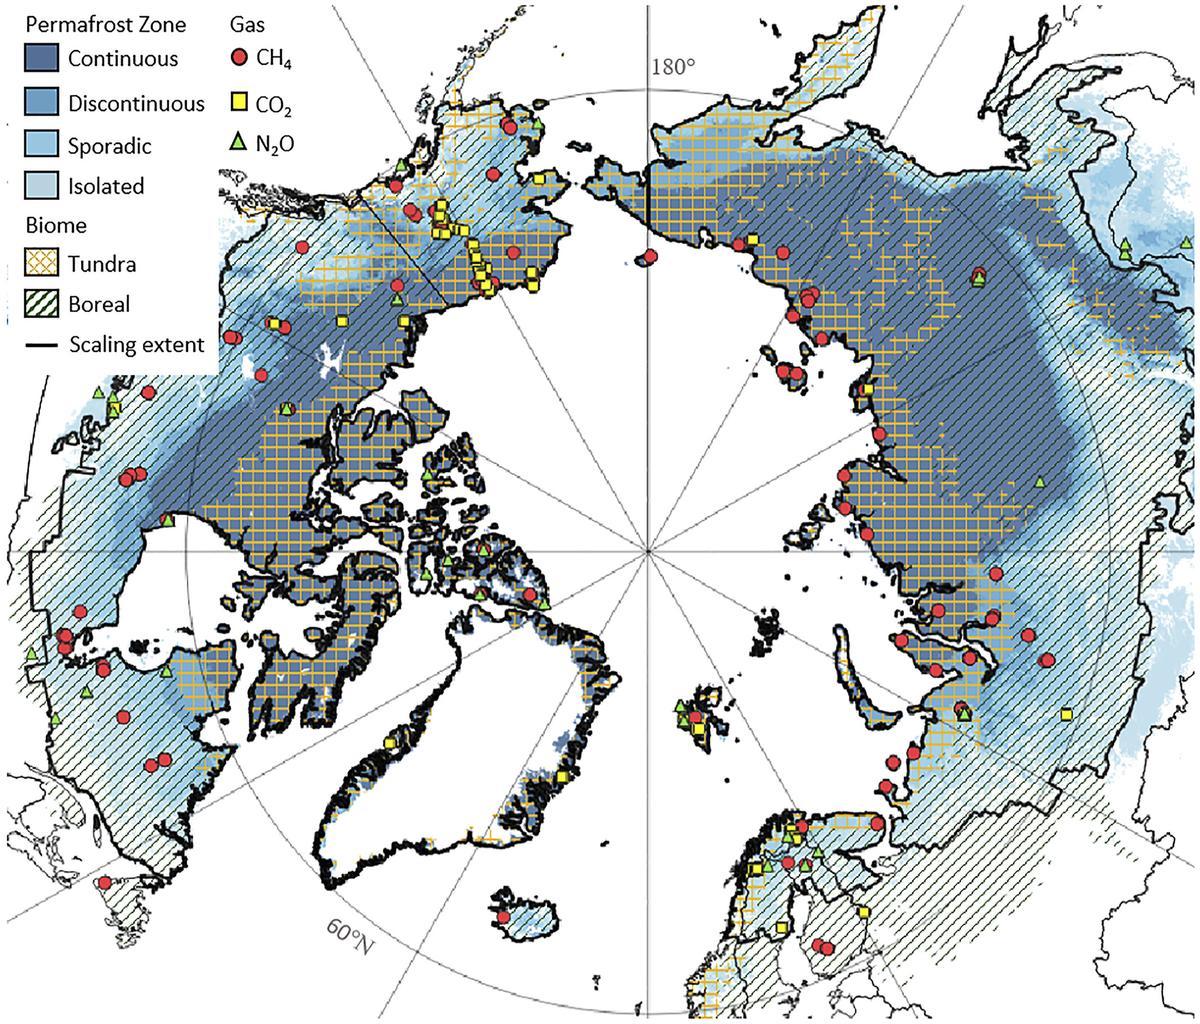 Distribución mundial del permafrost